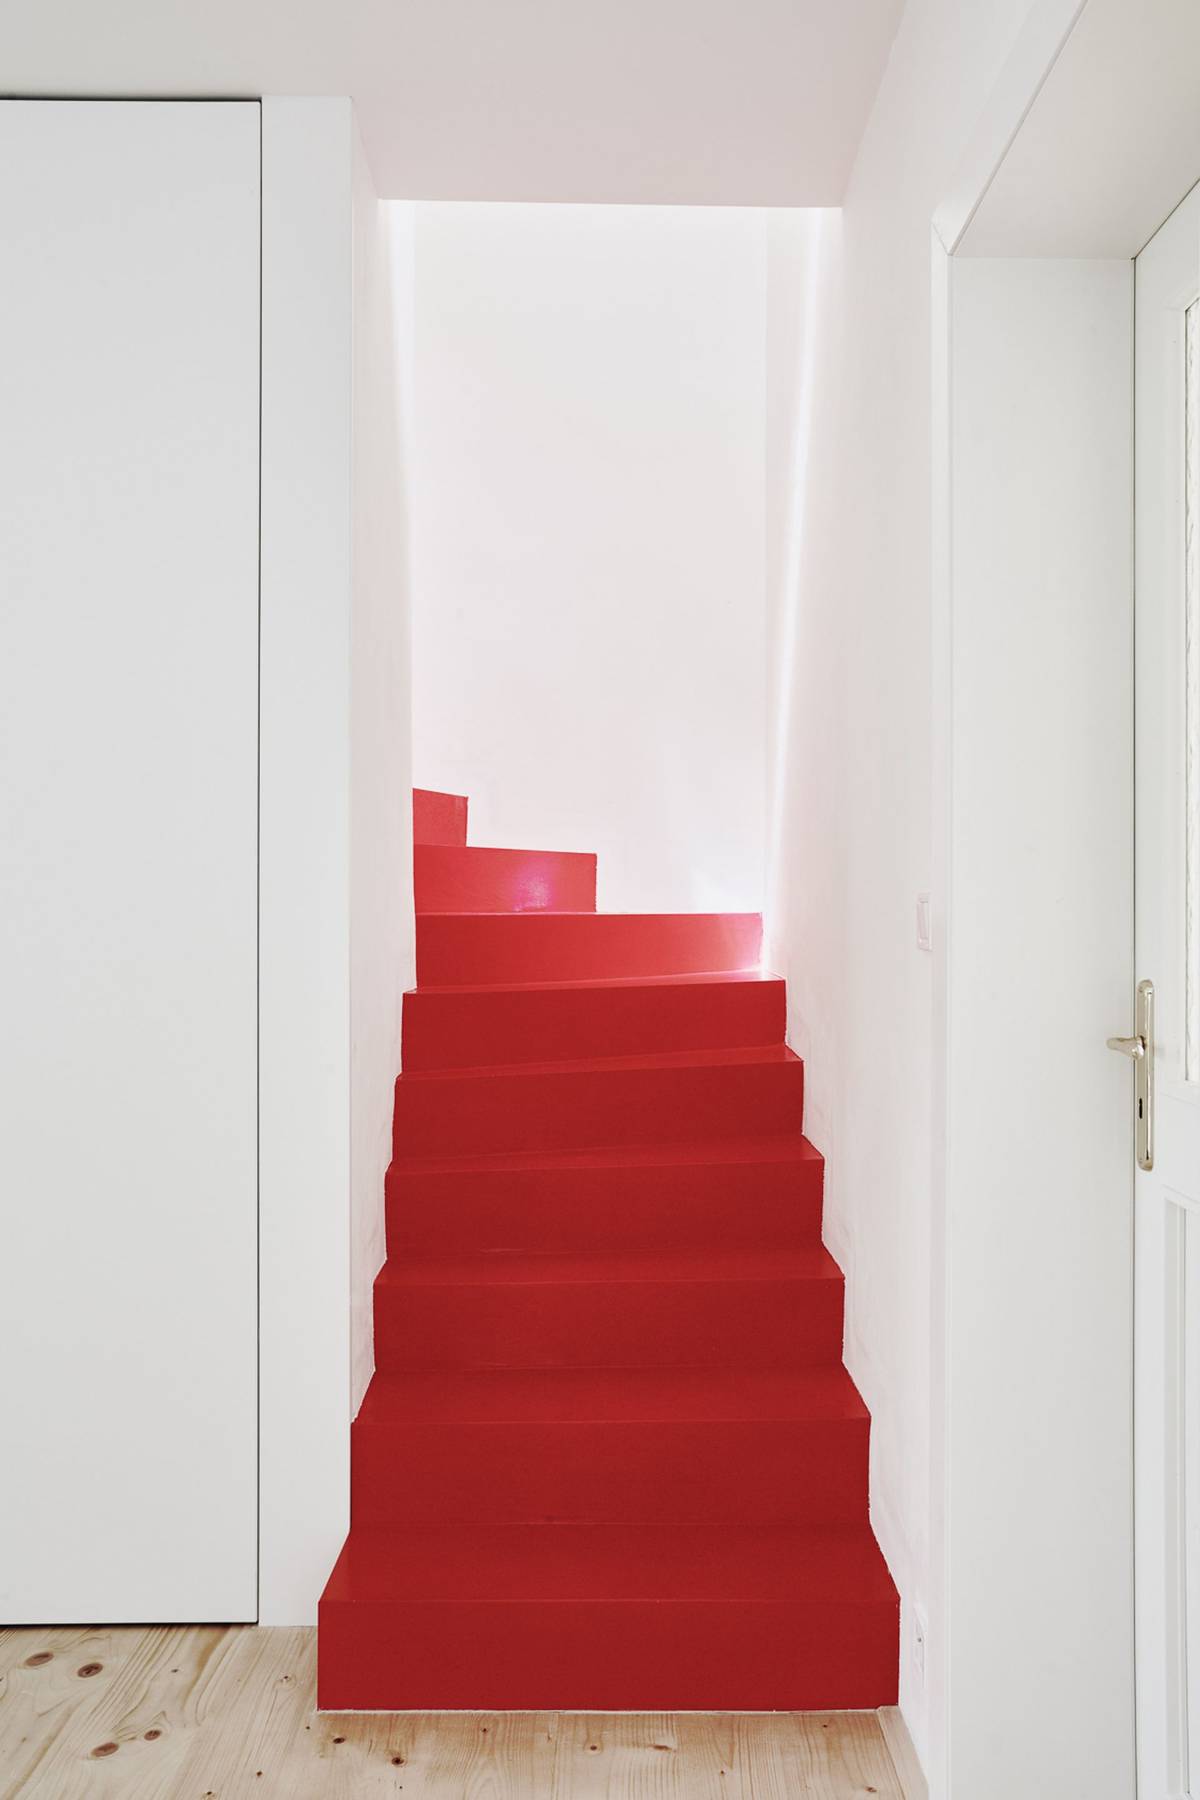 Se zbytkem interiéru kontrastuje schodiště upravené červenou stěrkou